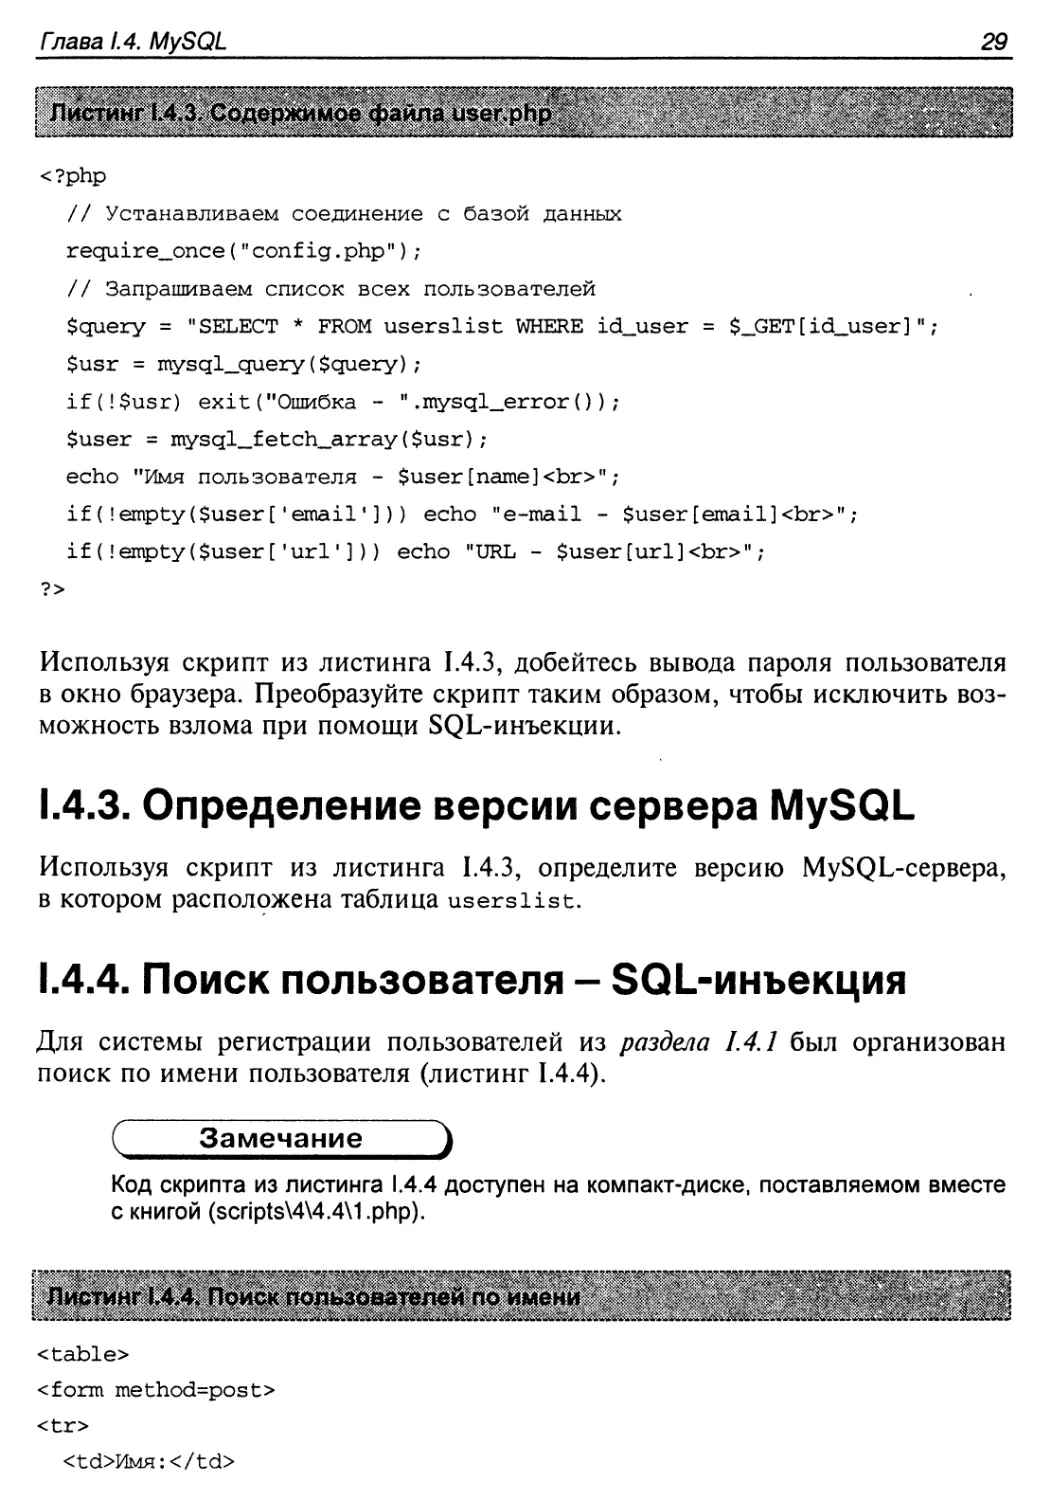 1.4.3. Определение версии сервера MySQL
1.4.4. Поиск пользователя — SQL-инъекция